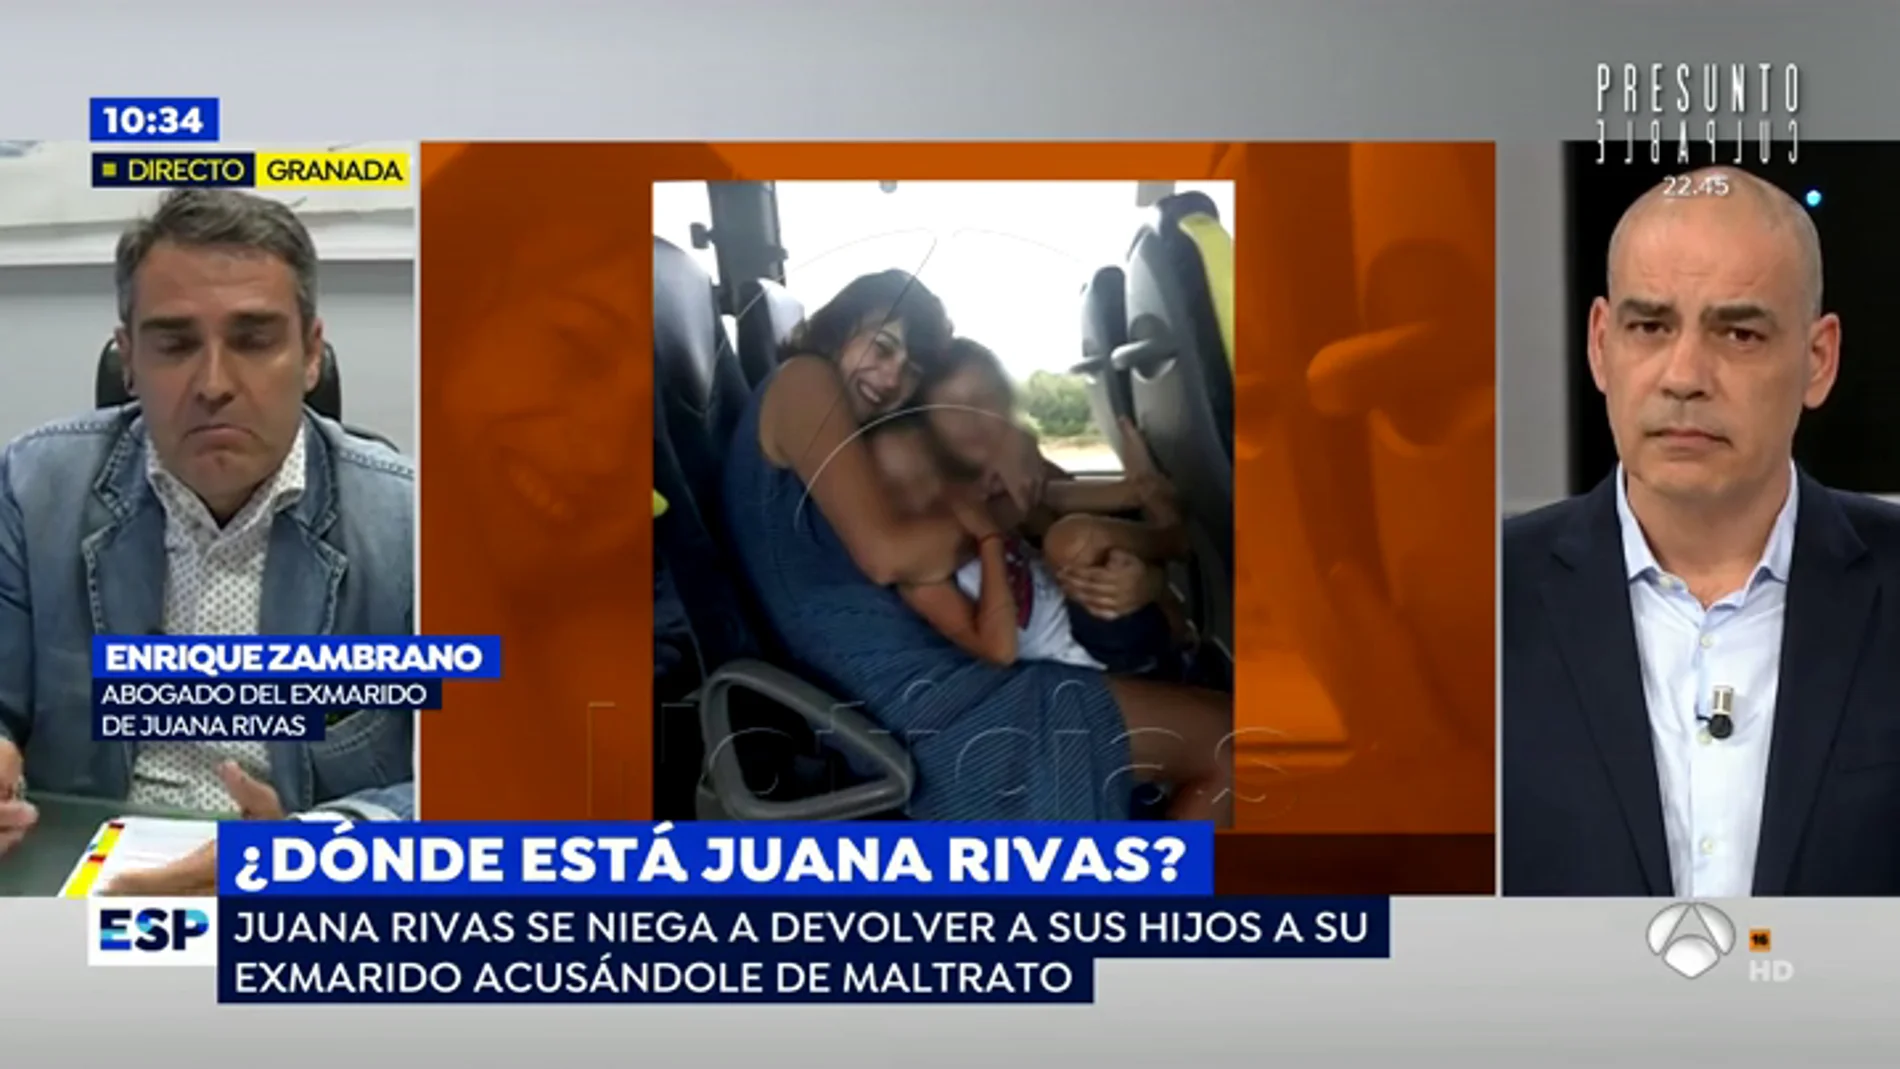 El exmarido de Juana Rivas niega haber maltratado a su hijo y asegura que el golpe se produjo en un accidente doméstico